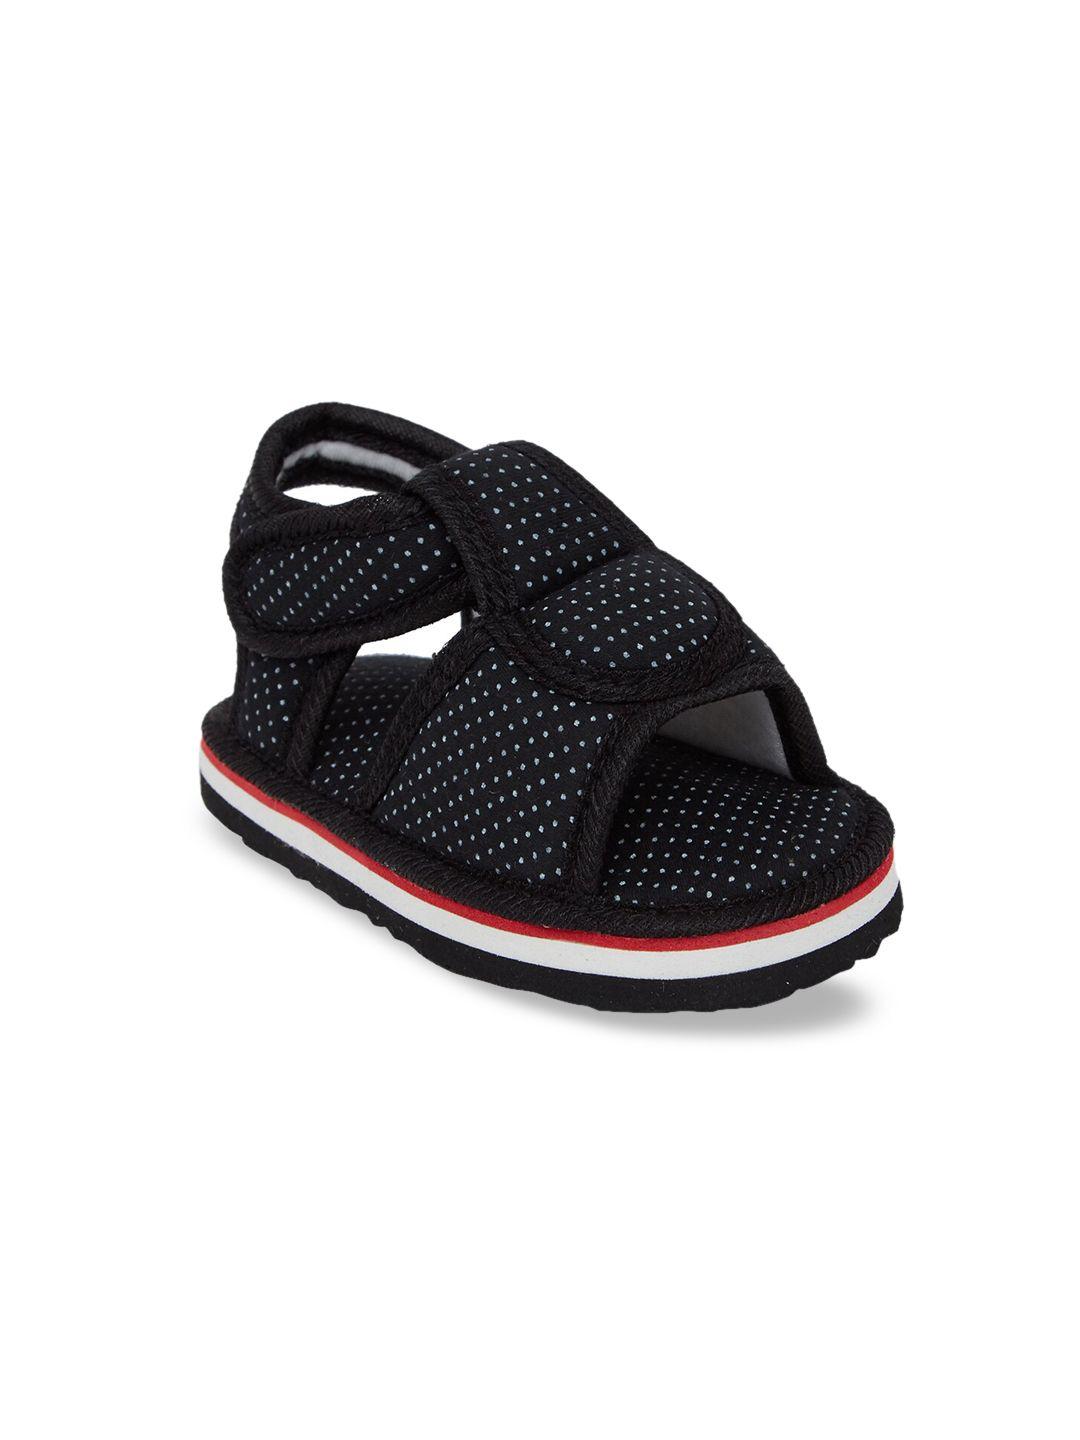 chiu kids black & white comfort sandals with kweeking sound